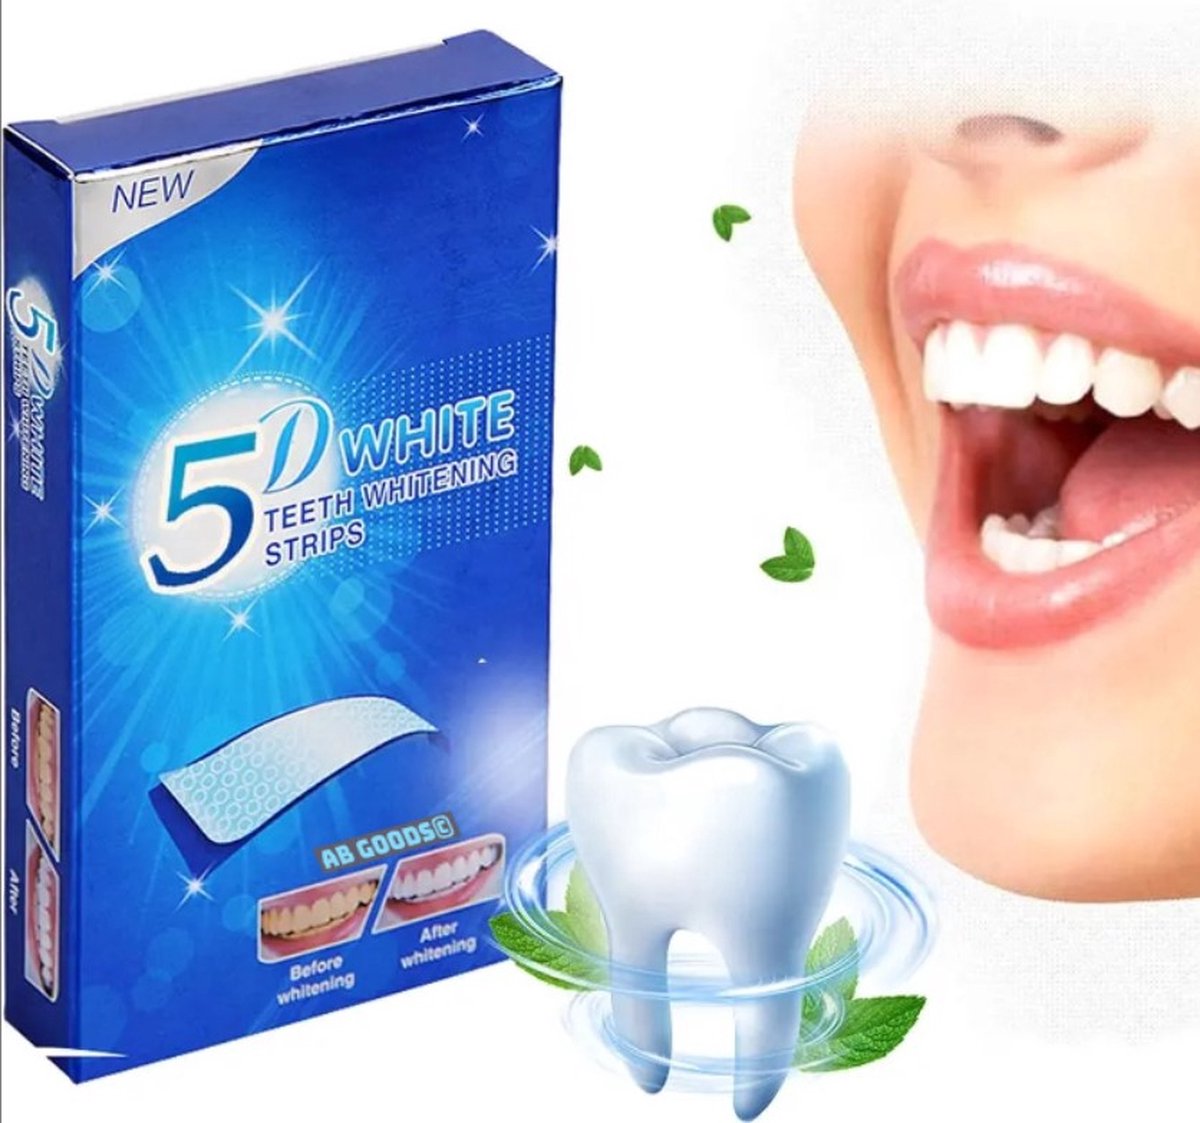 AB Goods© Tandenbleekset - Tanden bleken - Whitening strips - Tandenblekers - Tandenbleken - Tanden bleekstrips - Teeth whitening strips - Tandenbleek set